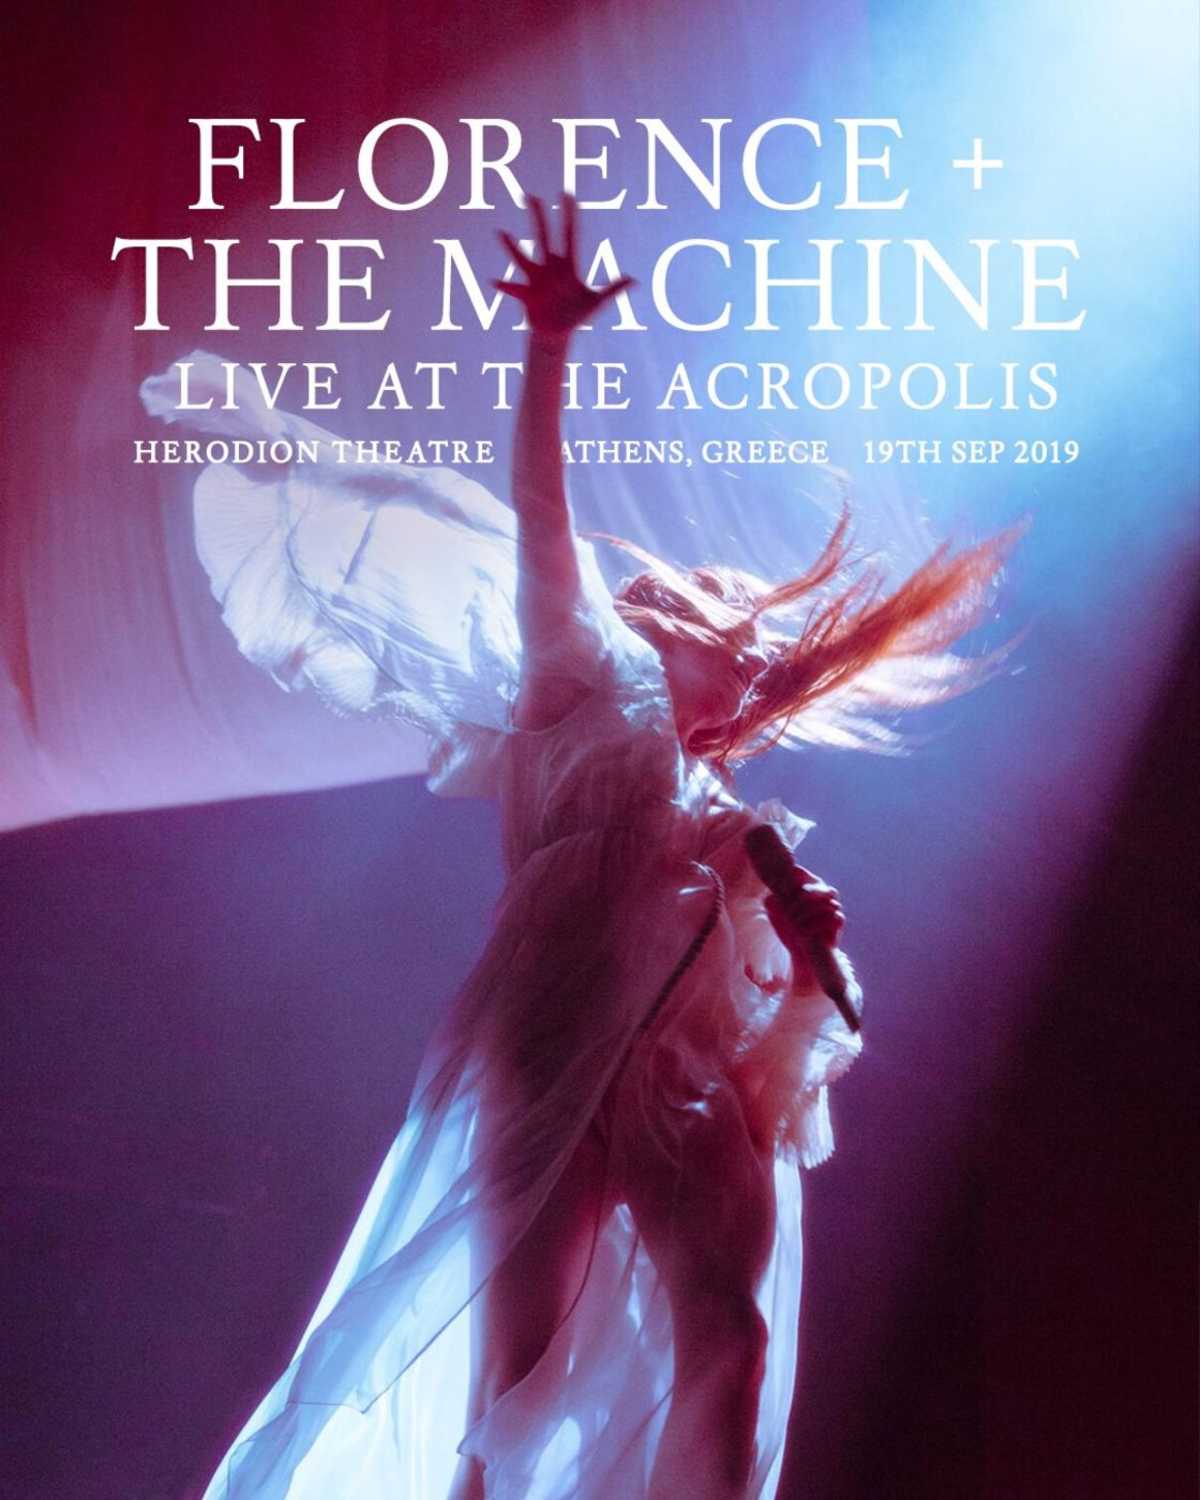 Είναι επίσημο! Οι Florence + the Machine στην Ακρόπολη!